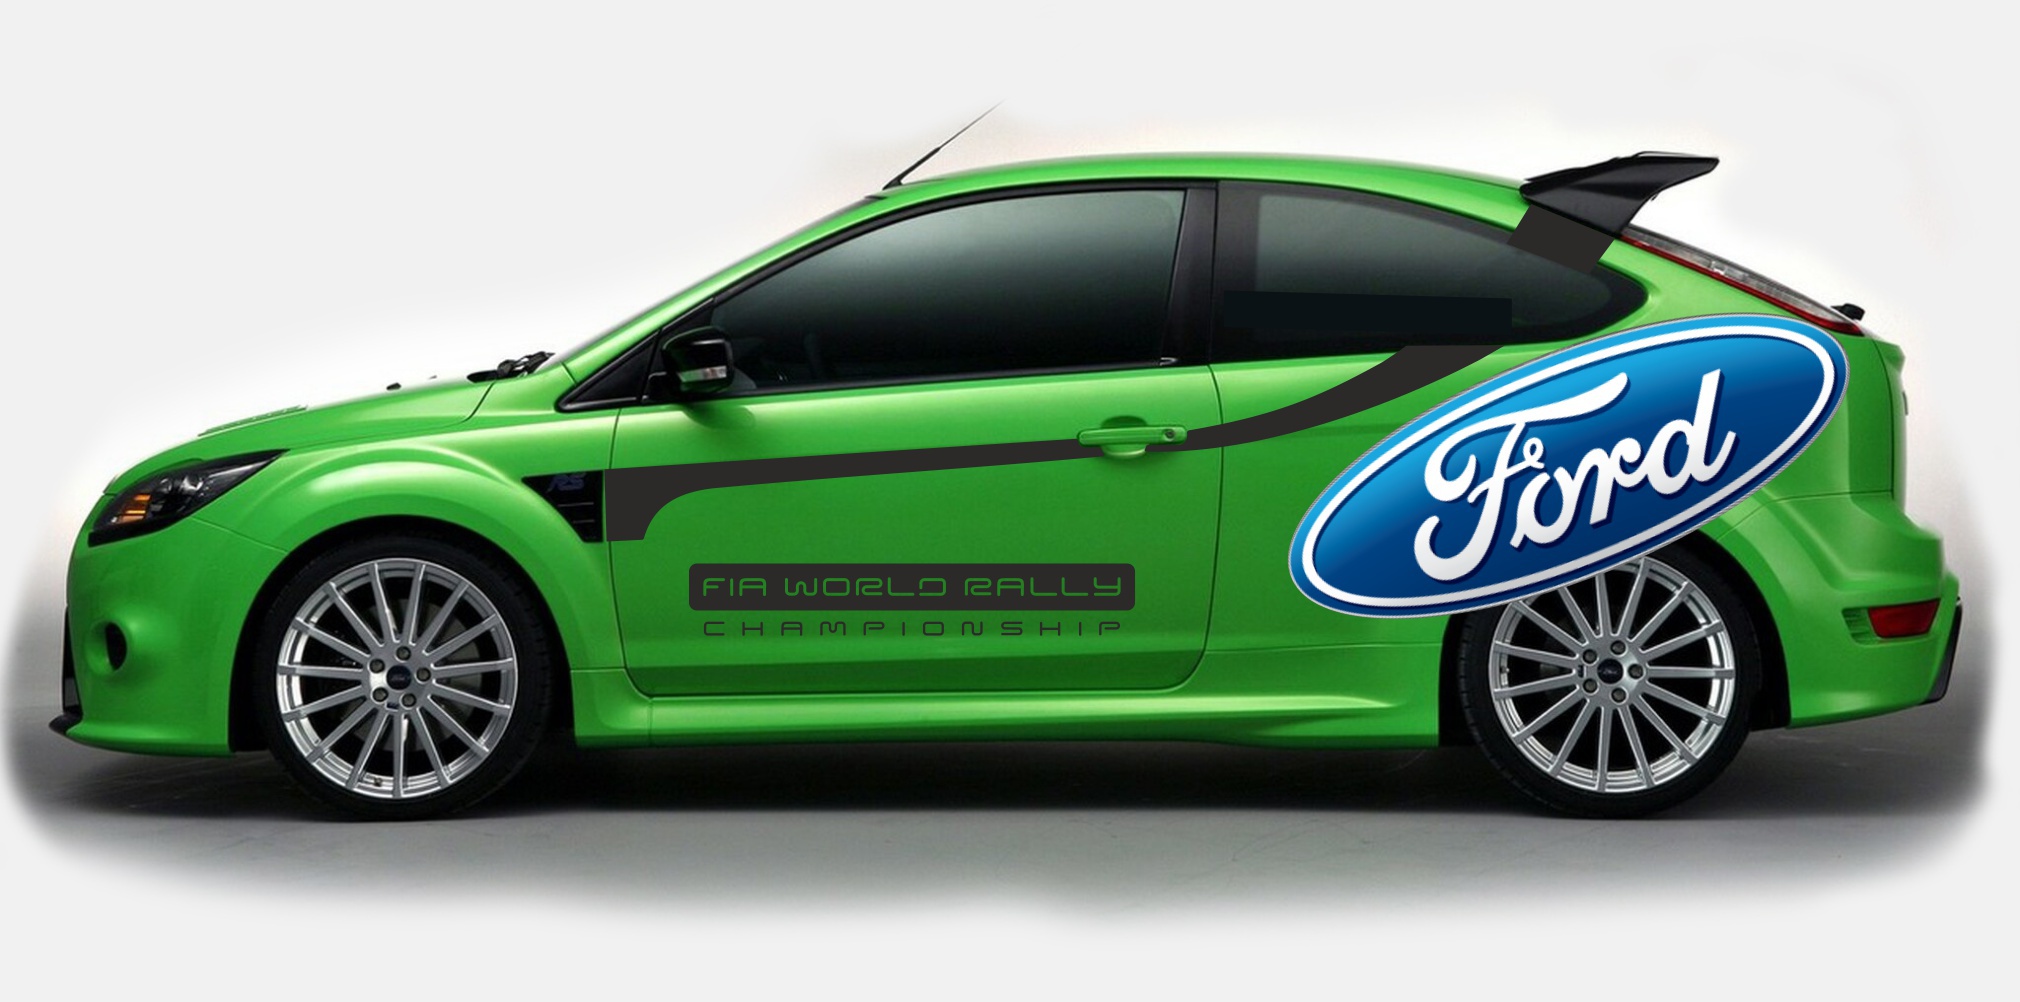 Naklejki na samochód samochodowe Ford Fiesta Focus WRC RS Irmscher Sticker Decals Aufkleber